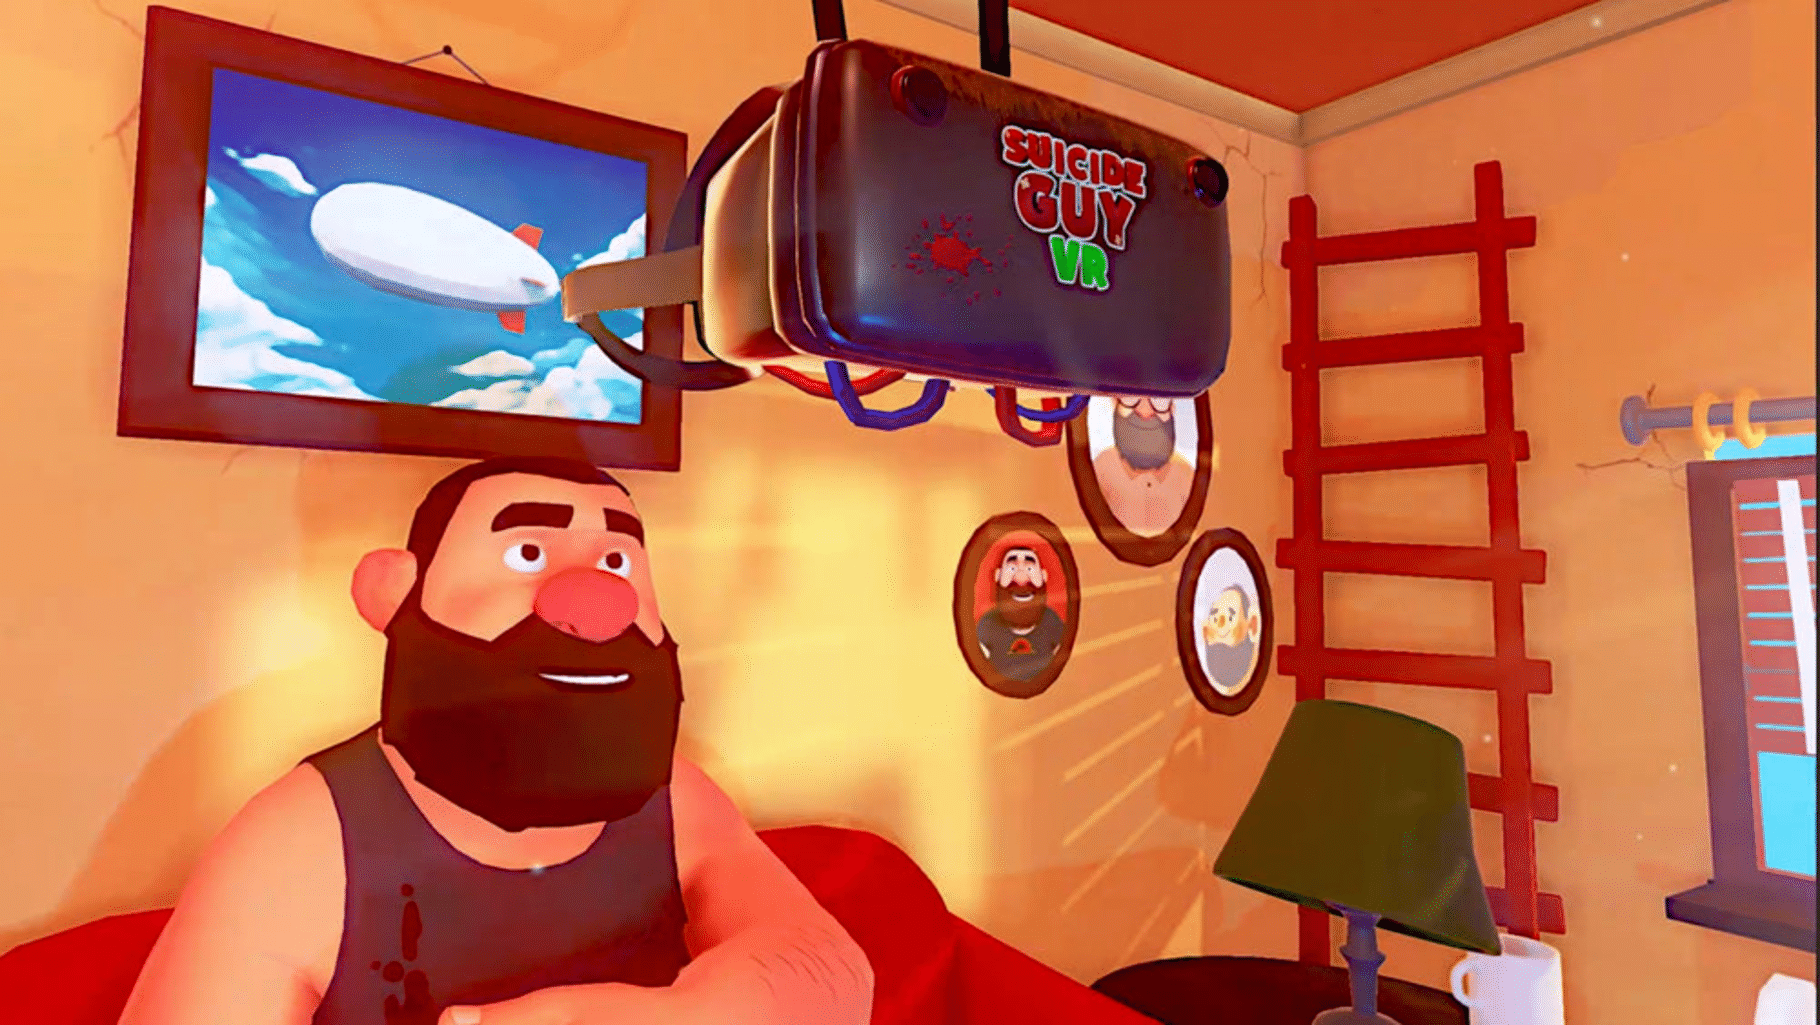 Suicide Guy VR screenshot